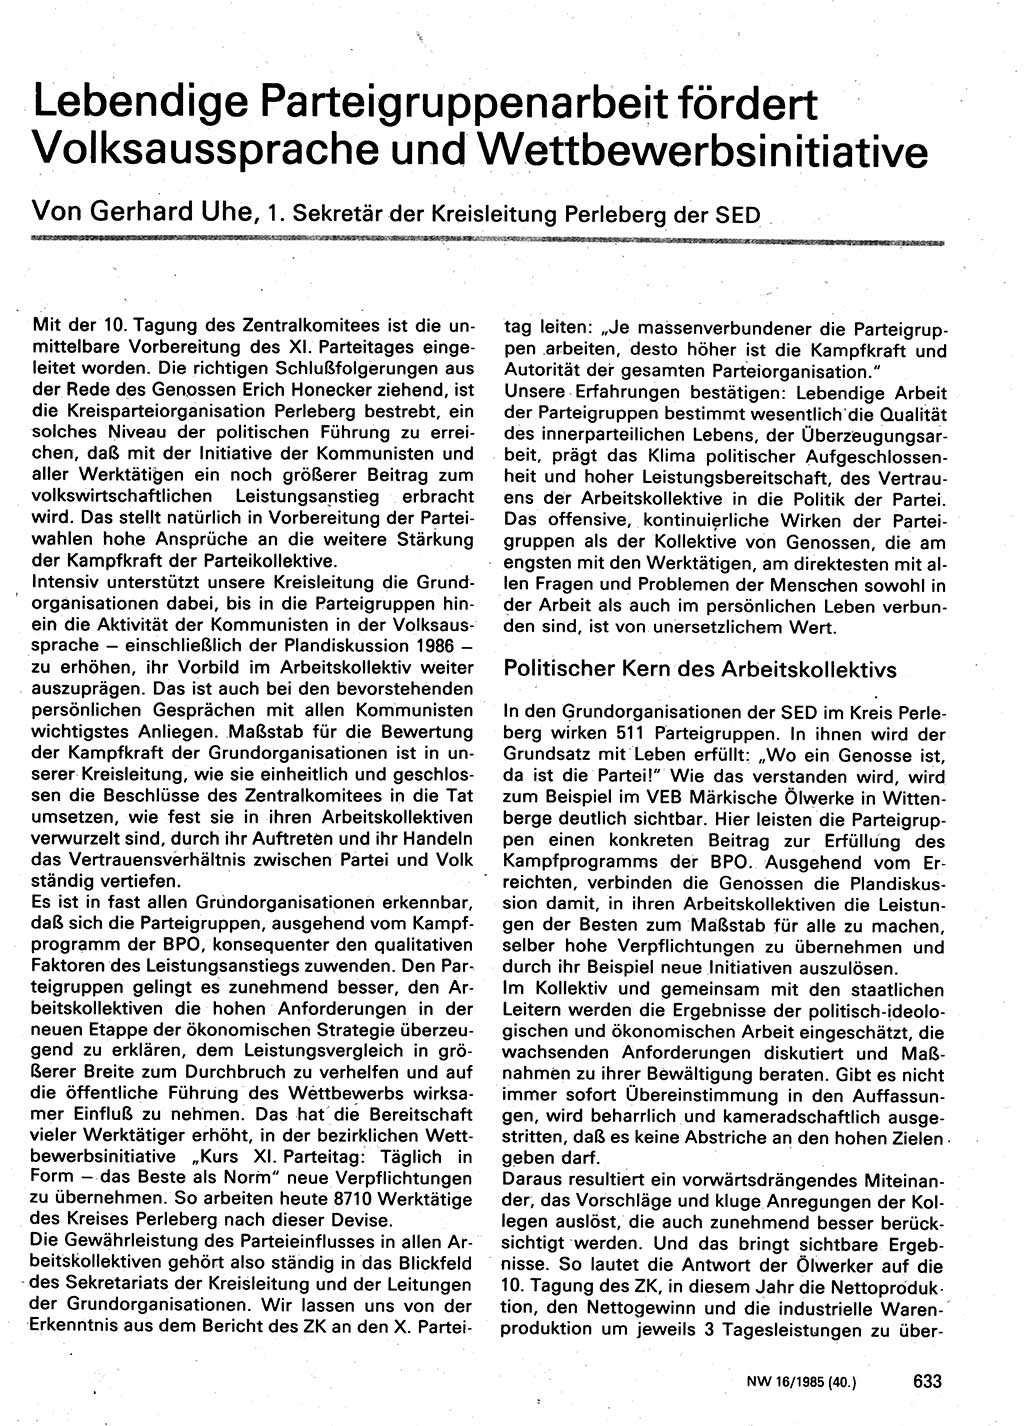 Neuer Weg (NW), Organ des Zentralkomitees (ZK) der SED (Sozialistische Einheitspartei Deutschlands) für Fragen des Parteilebens, 40. Jahrgang [Deutsche Demokratische Republik (DDR)] 1985, Seite 633 (NW ZK SED DDR 1985, S. 633)